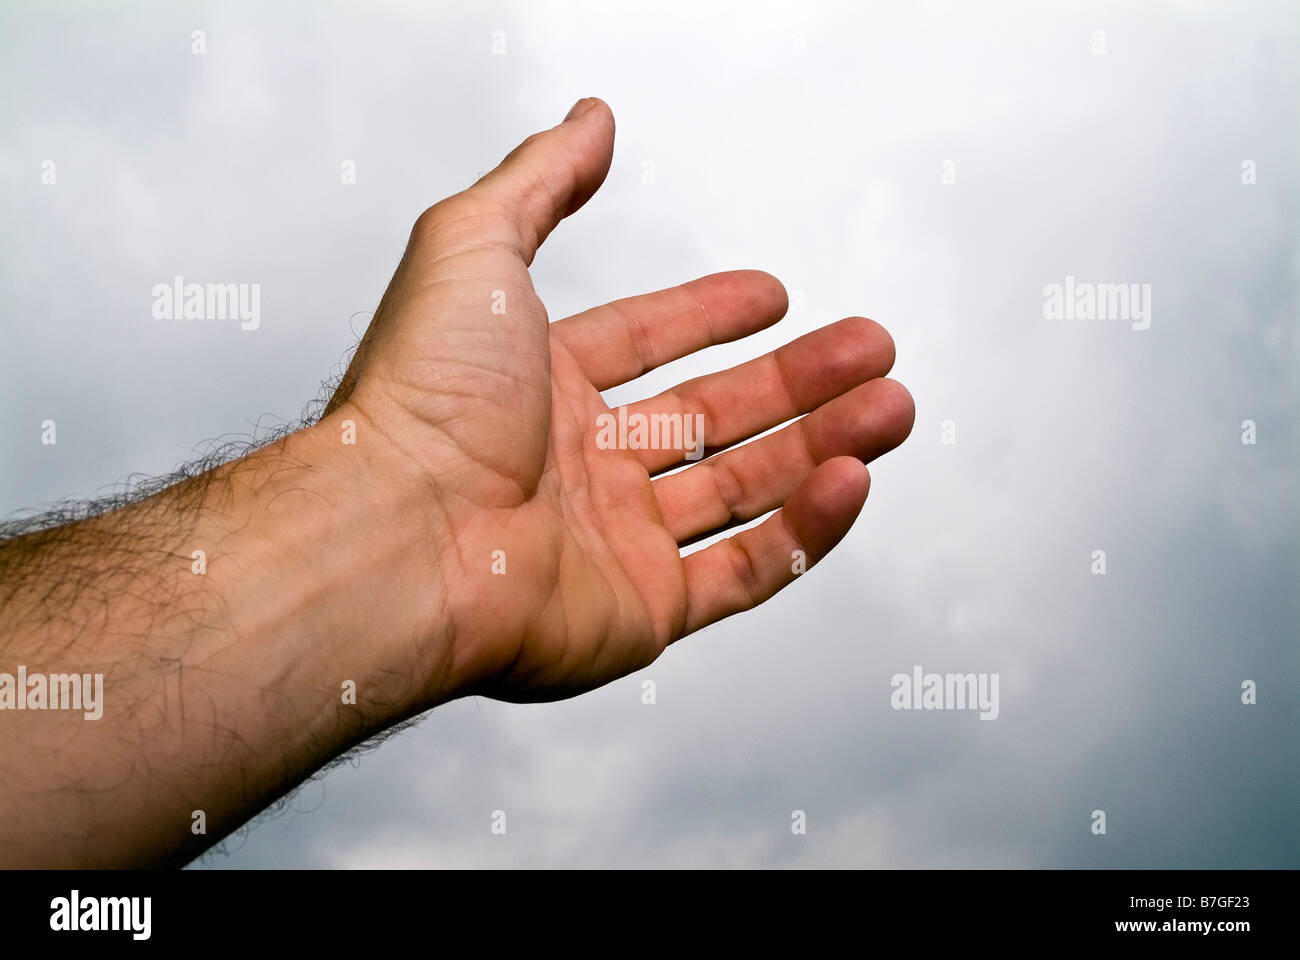 Ein Mann s Hand greift in den Himmel als ob brauchen eine helfende hand Stockfoto